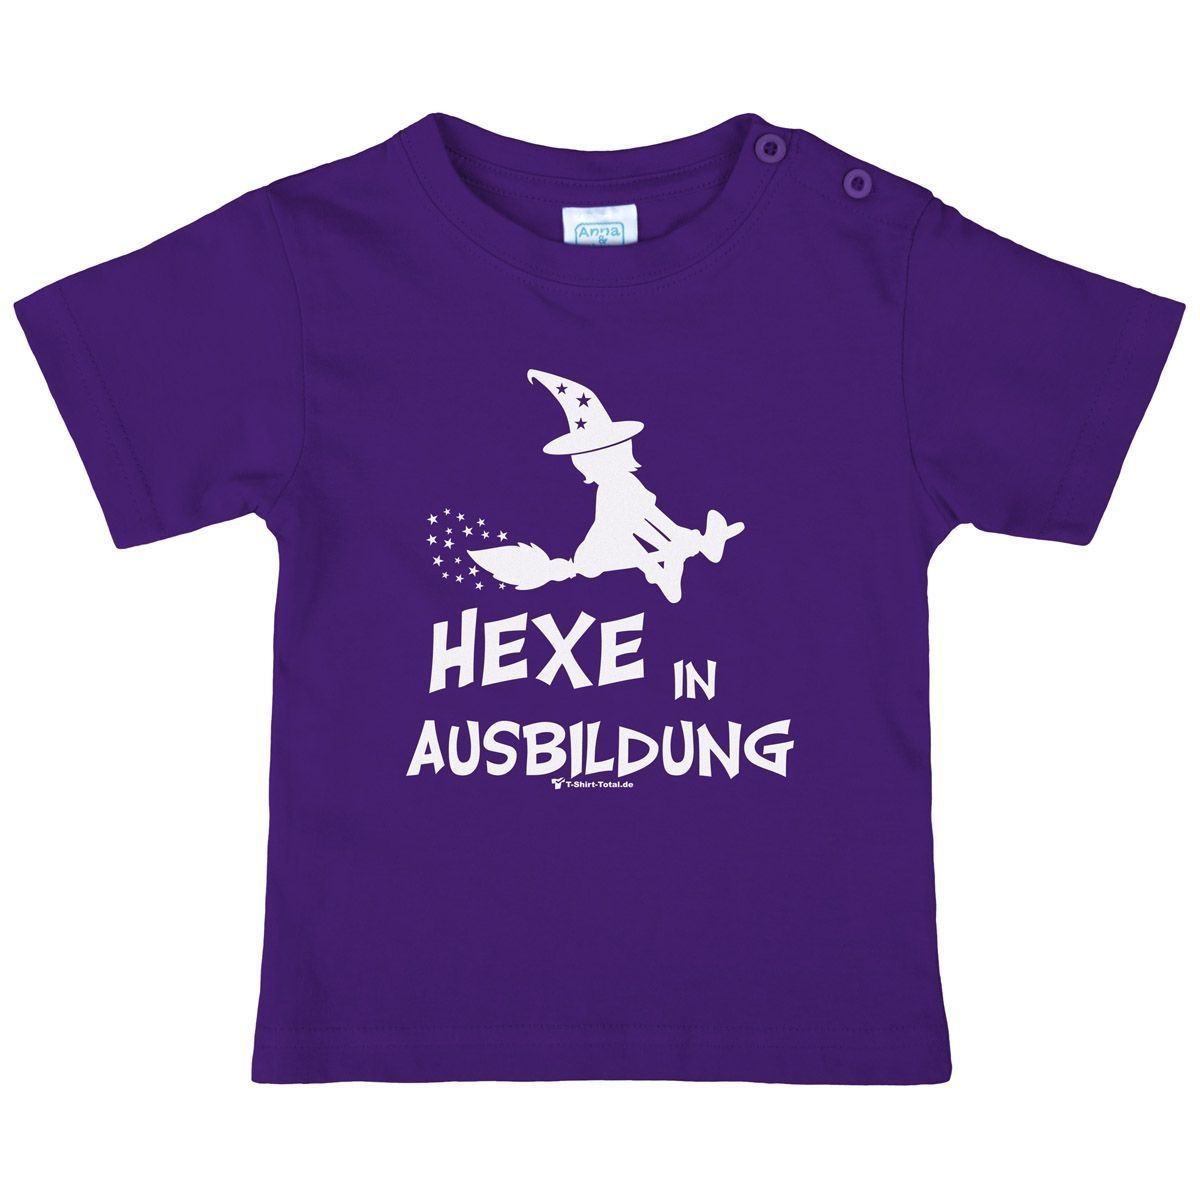 Hexe in Ausbildung Kinder T-Shirt lila 146 / 152